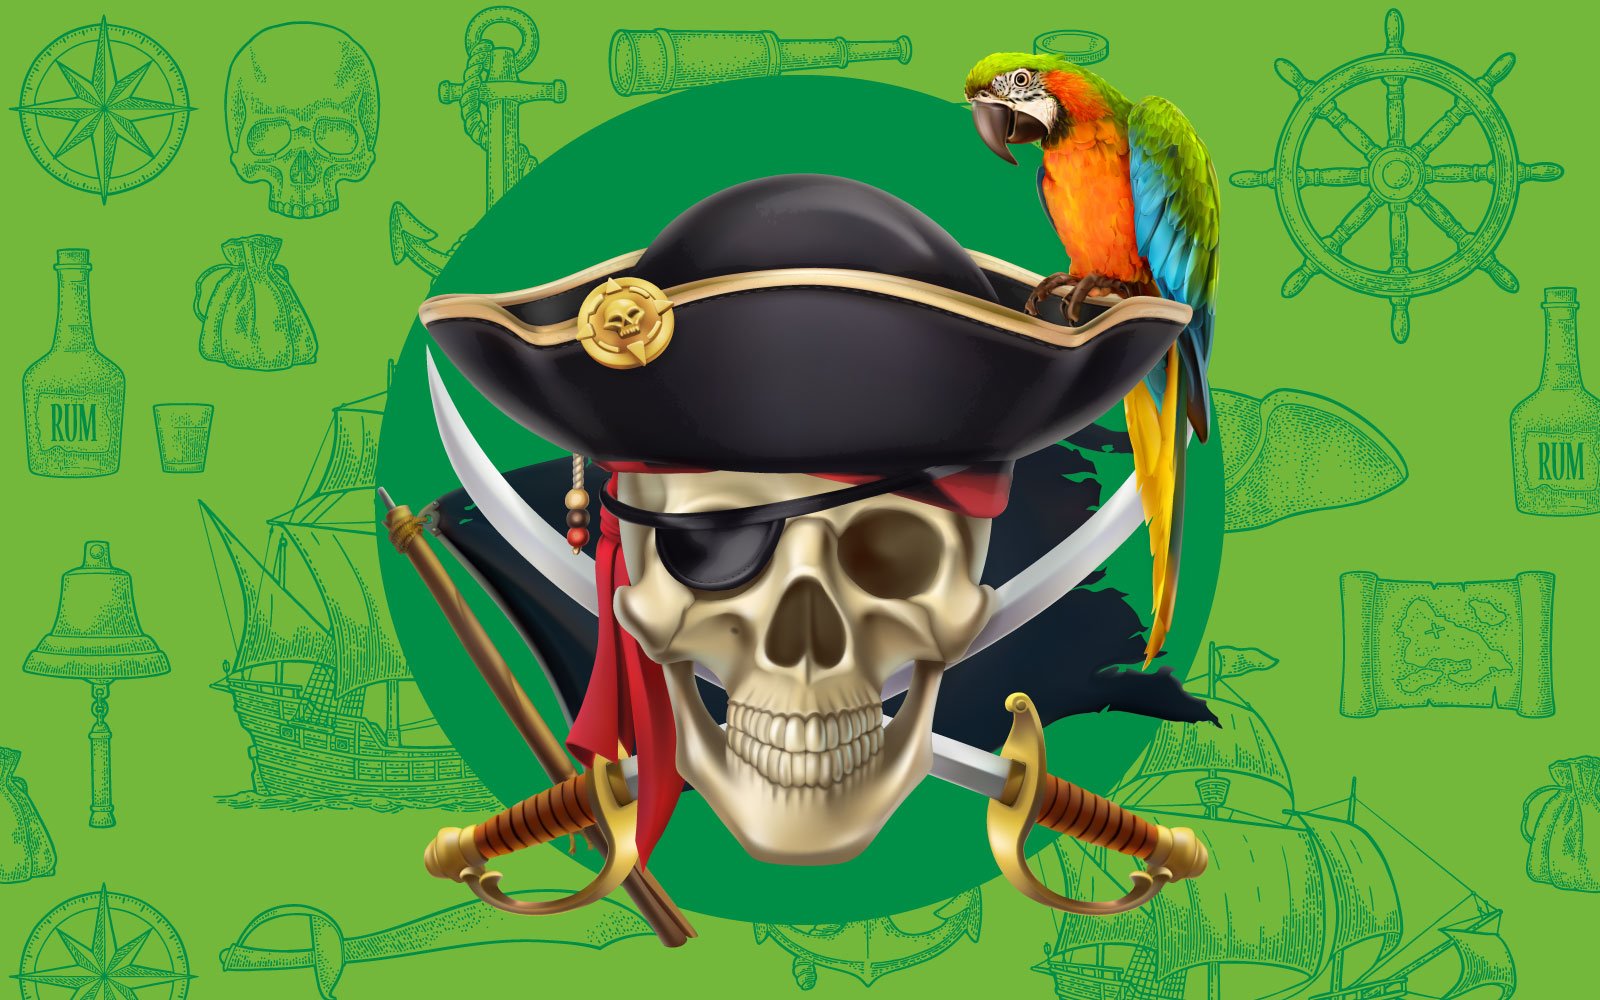 Os piratas da vida real: quem são?, by Informare